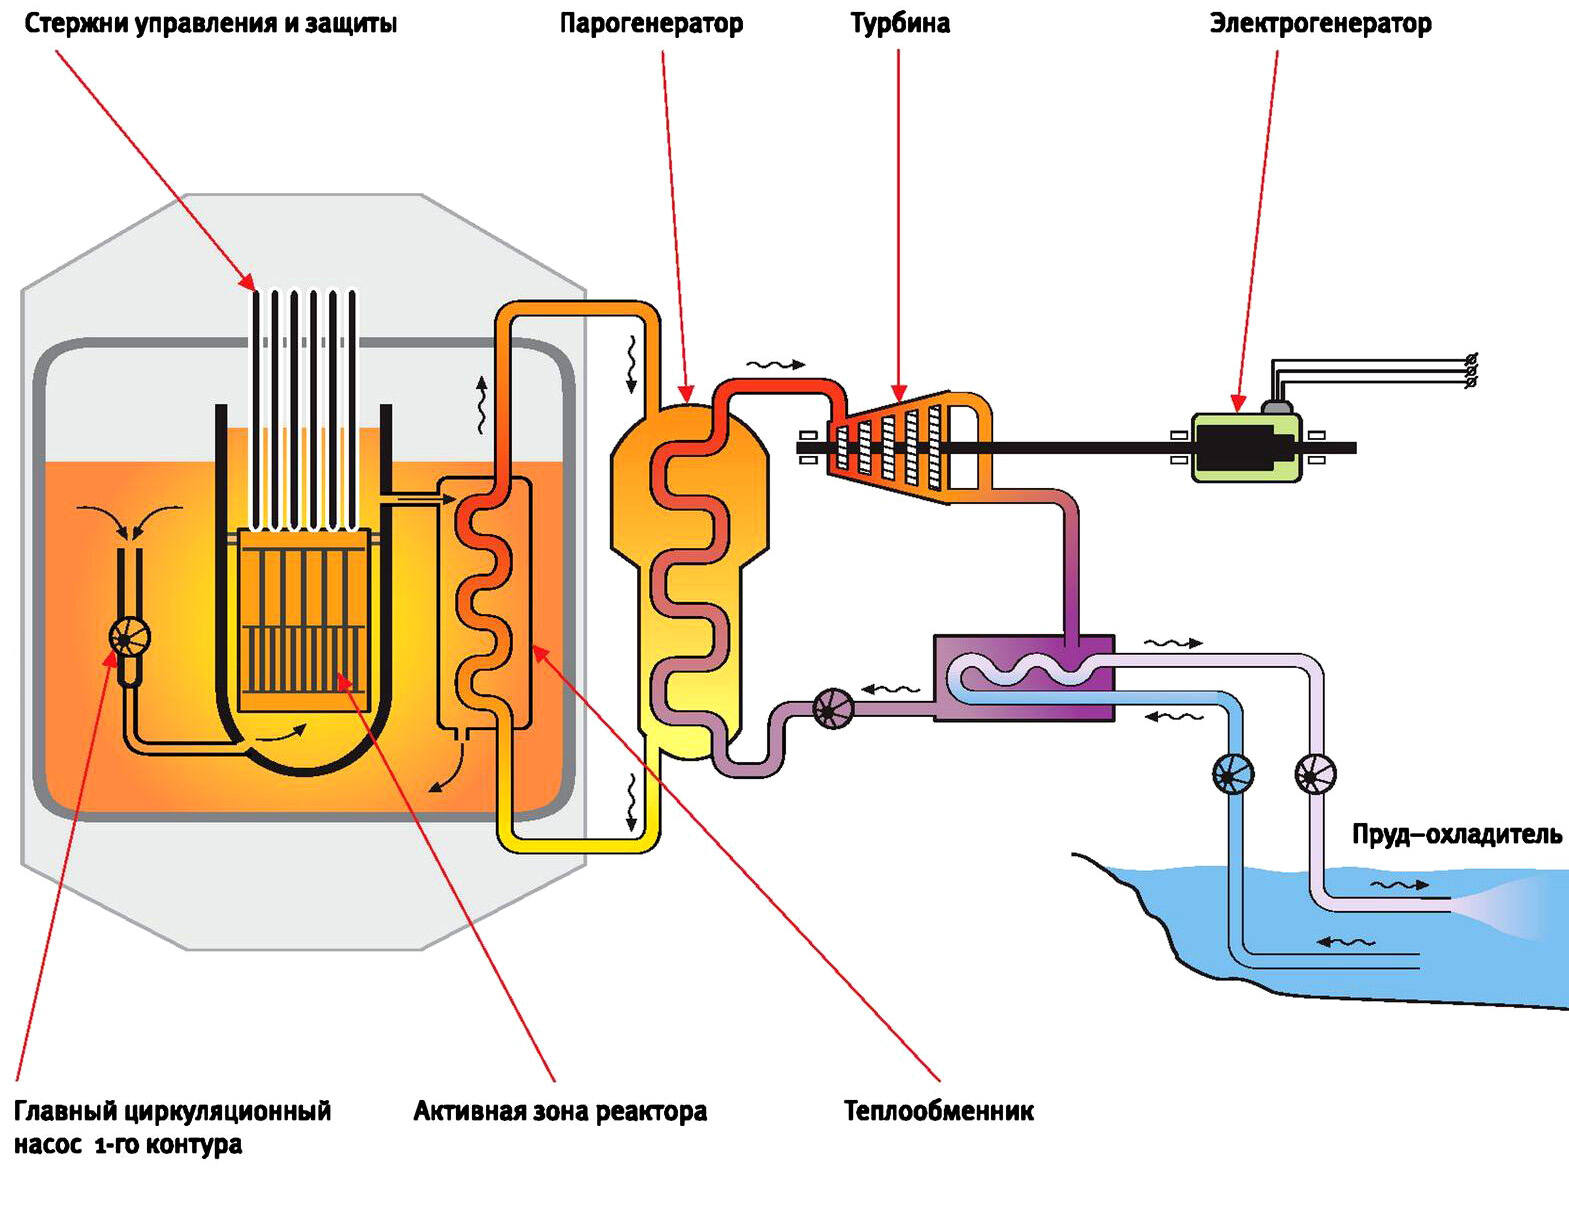 Схема энергоблока с реактором БН-600 (Белоярская АЭС)